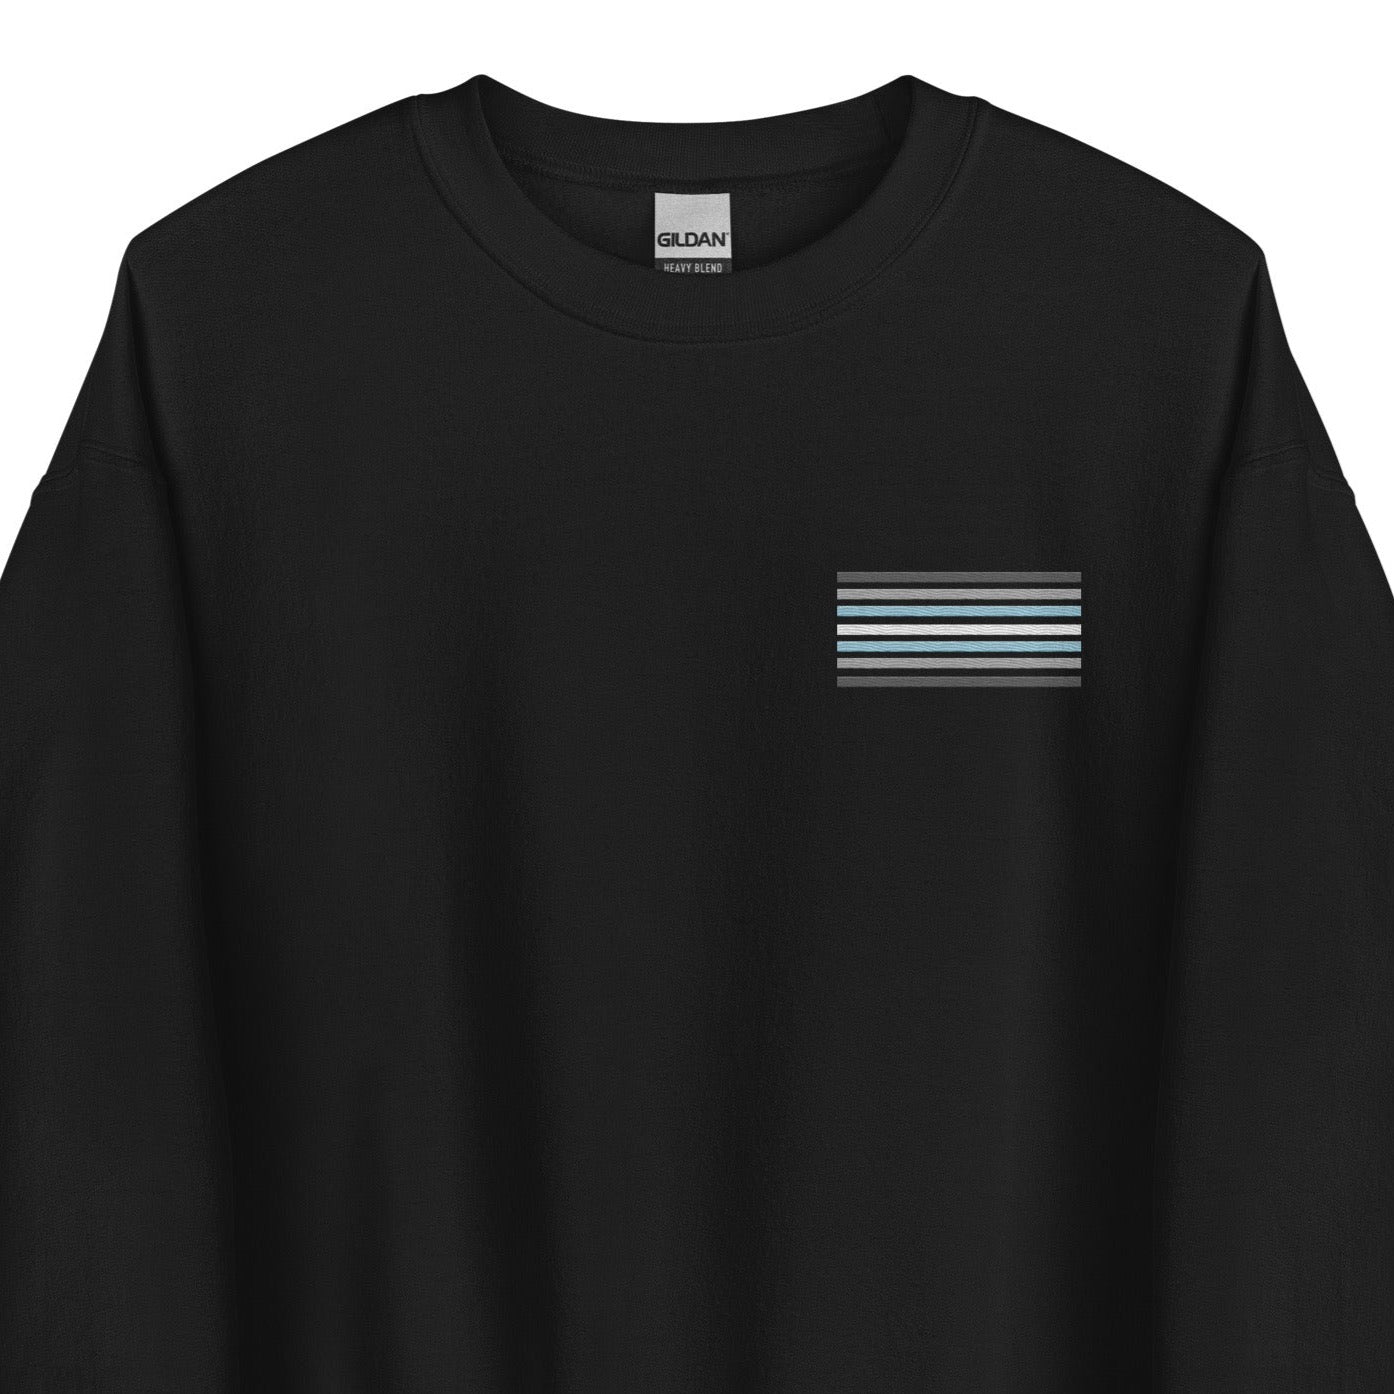 demiboy sweatshirt, subtle demigender pride flag embroidered pocket design sweater, main